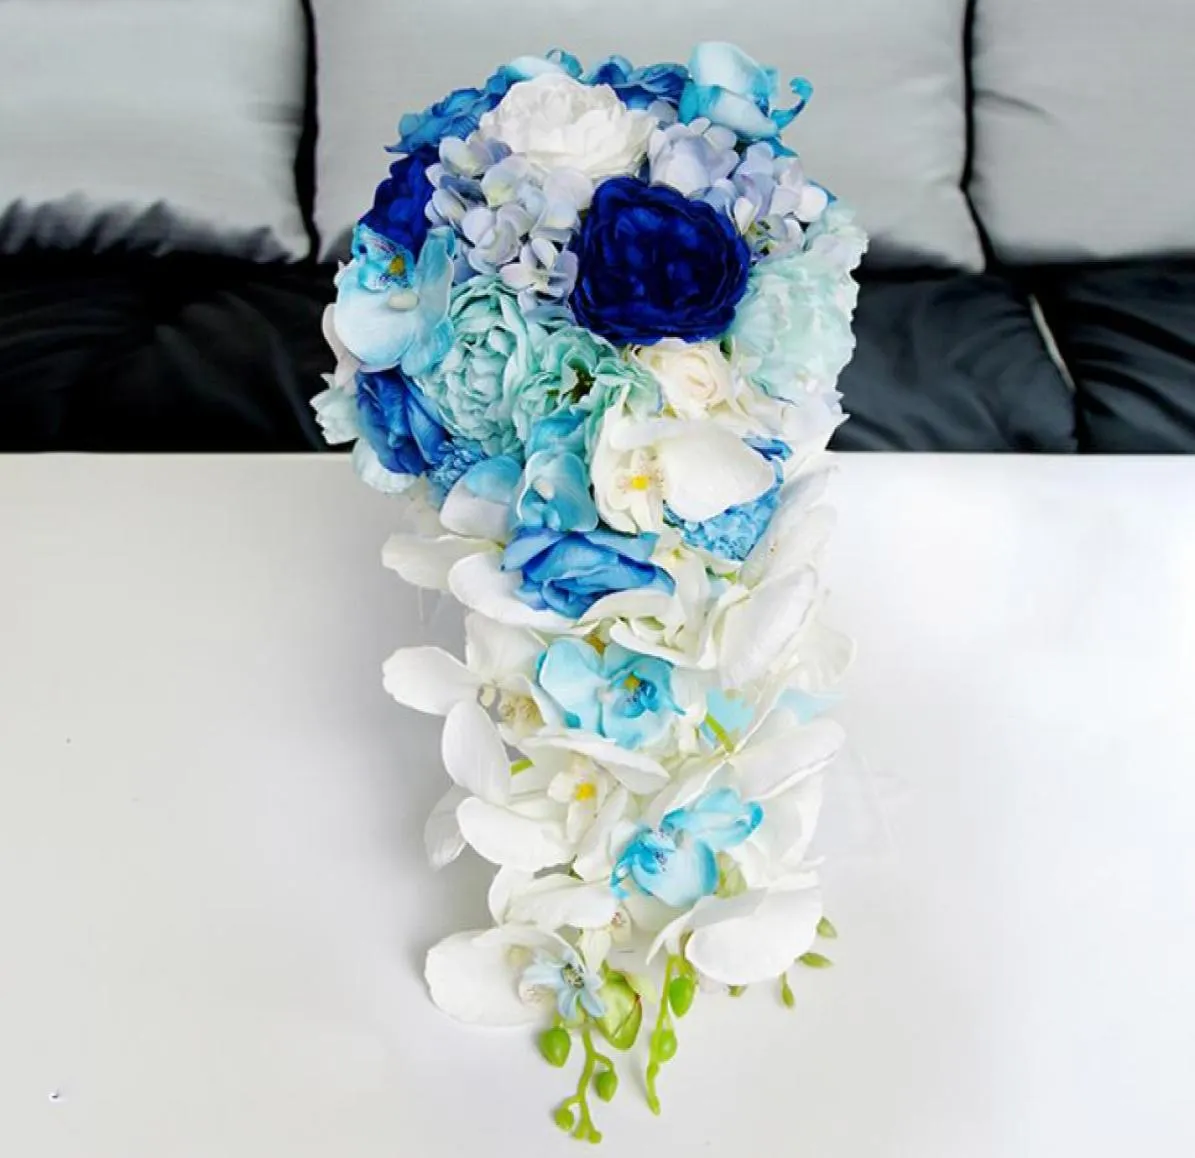 شلال الاصطناعي الجديد باقات الزفاف الأزرق الأزرق لعرائس قطرات الوردي الزهور الزفاف العروسة بواق بروش 20178029136